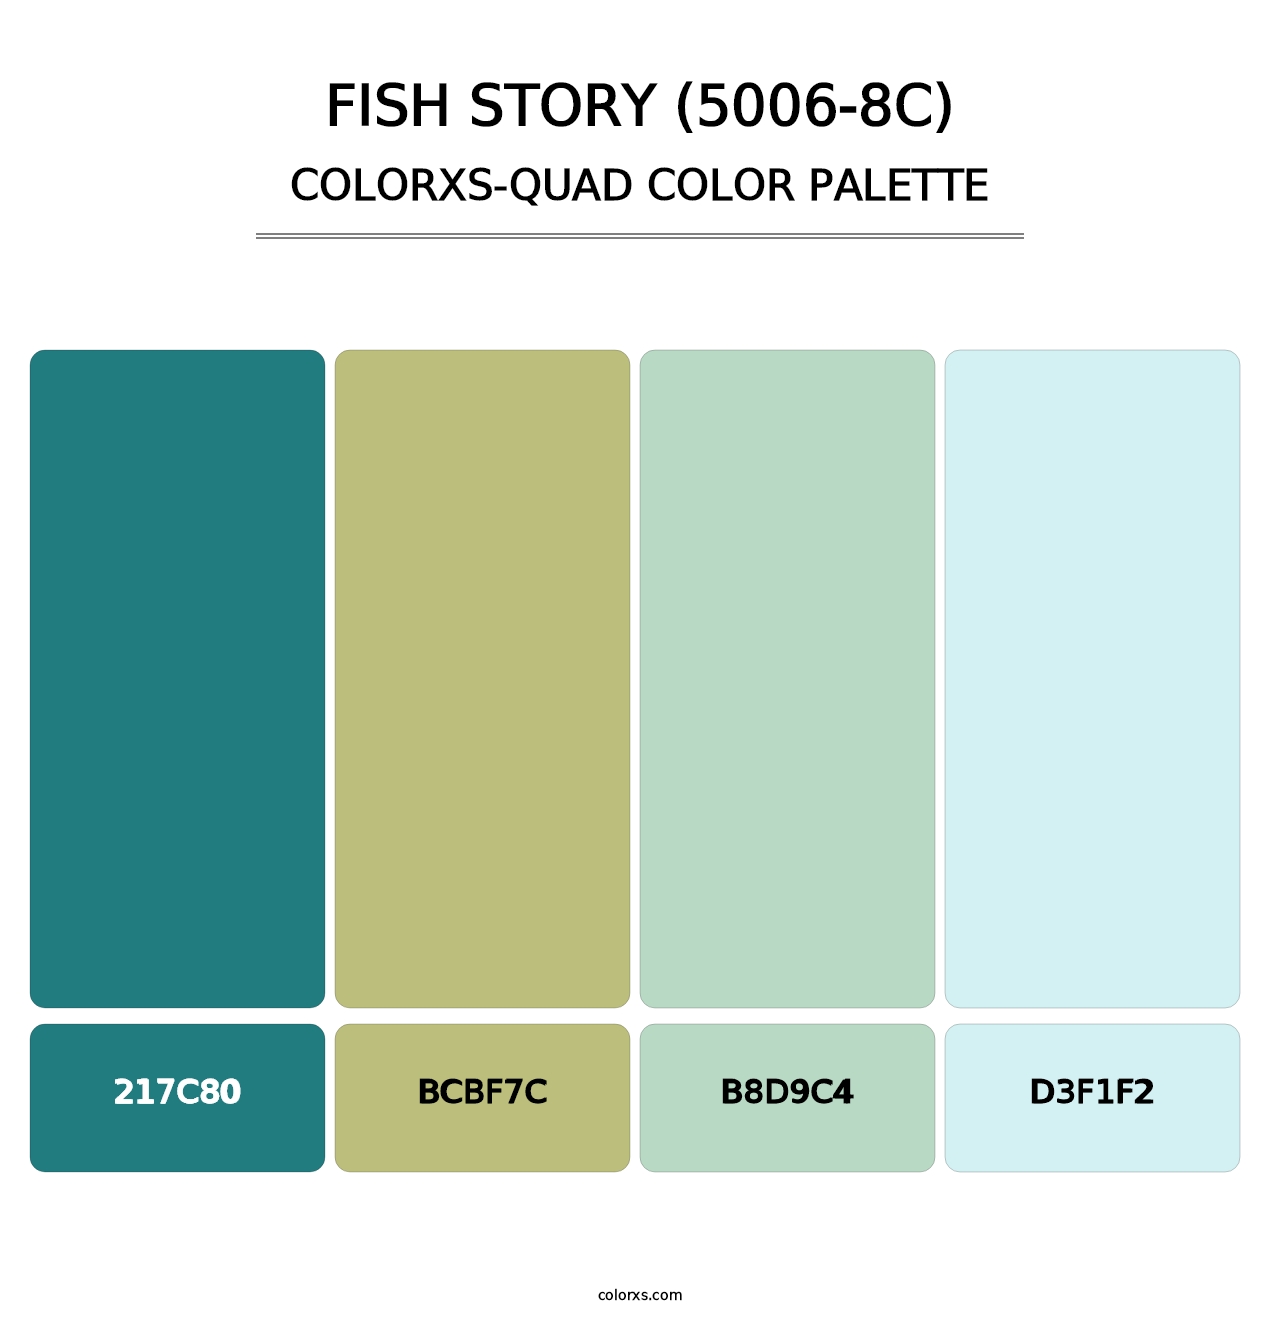 Fish Story (5006-8C) - Colorxs Quad Palette